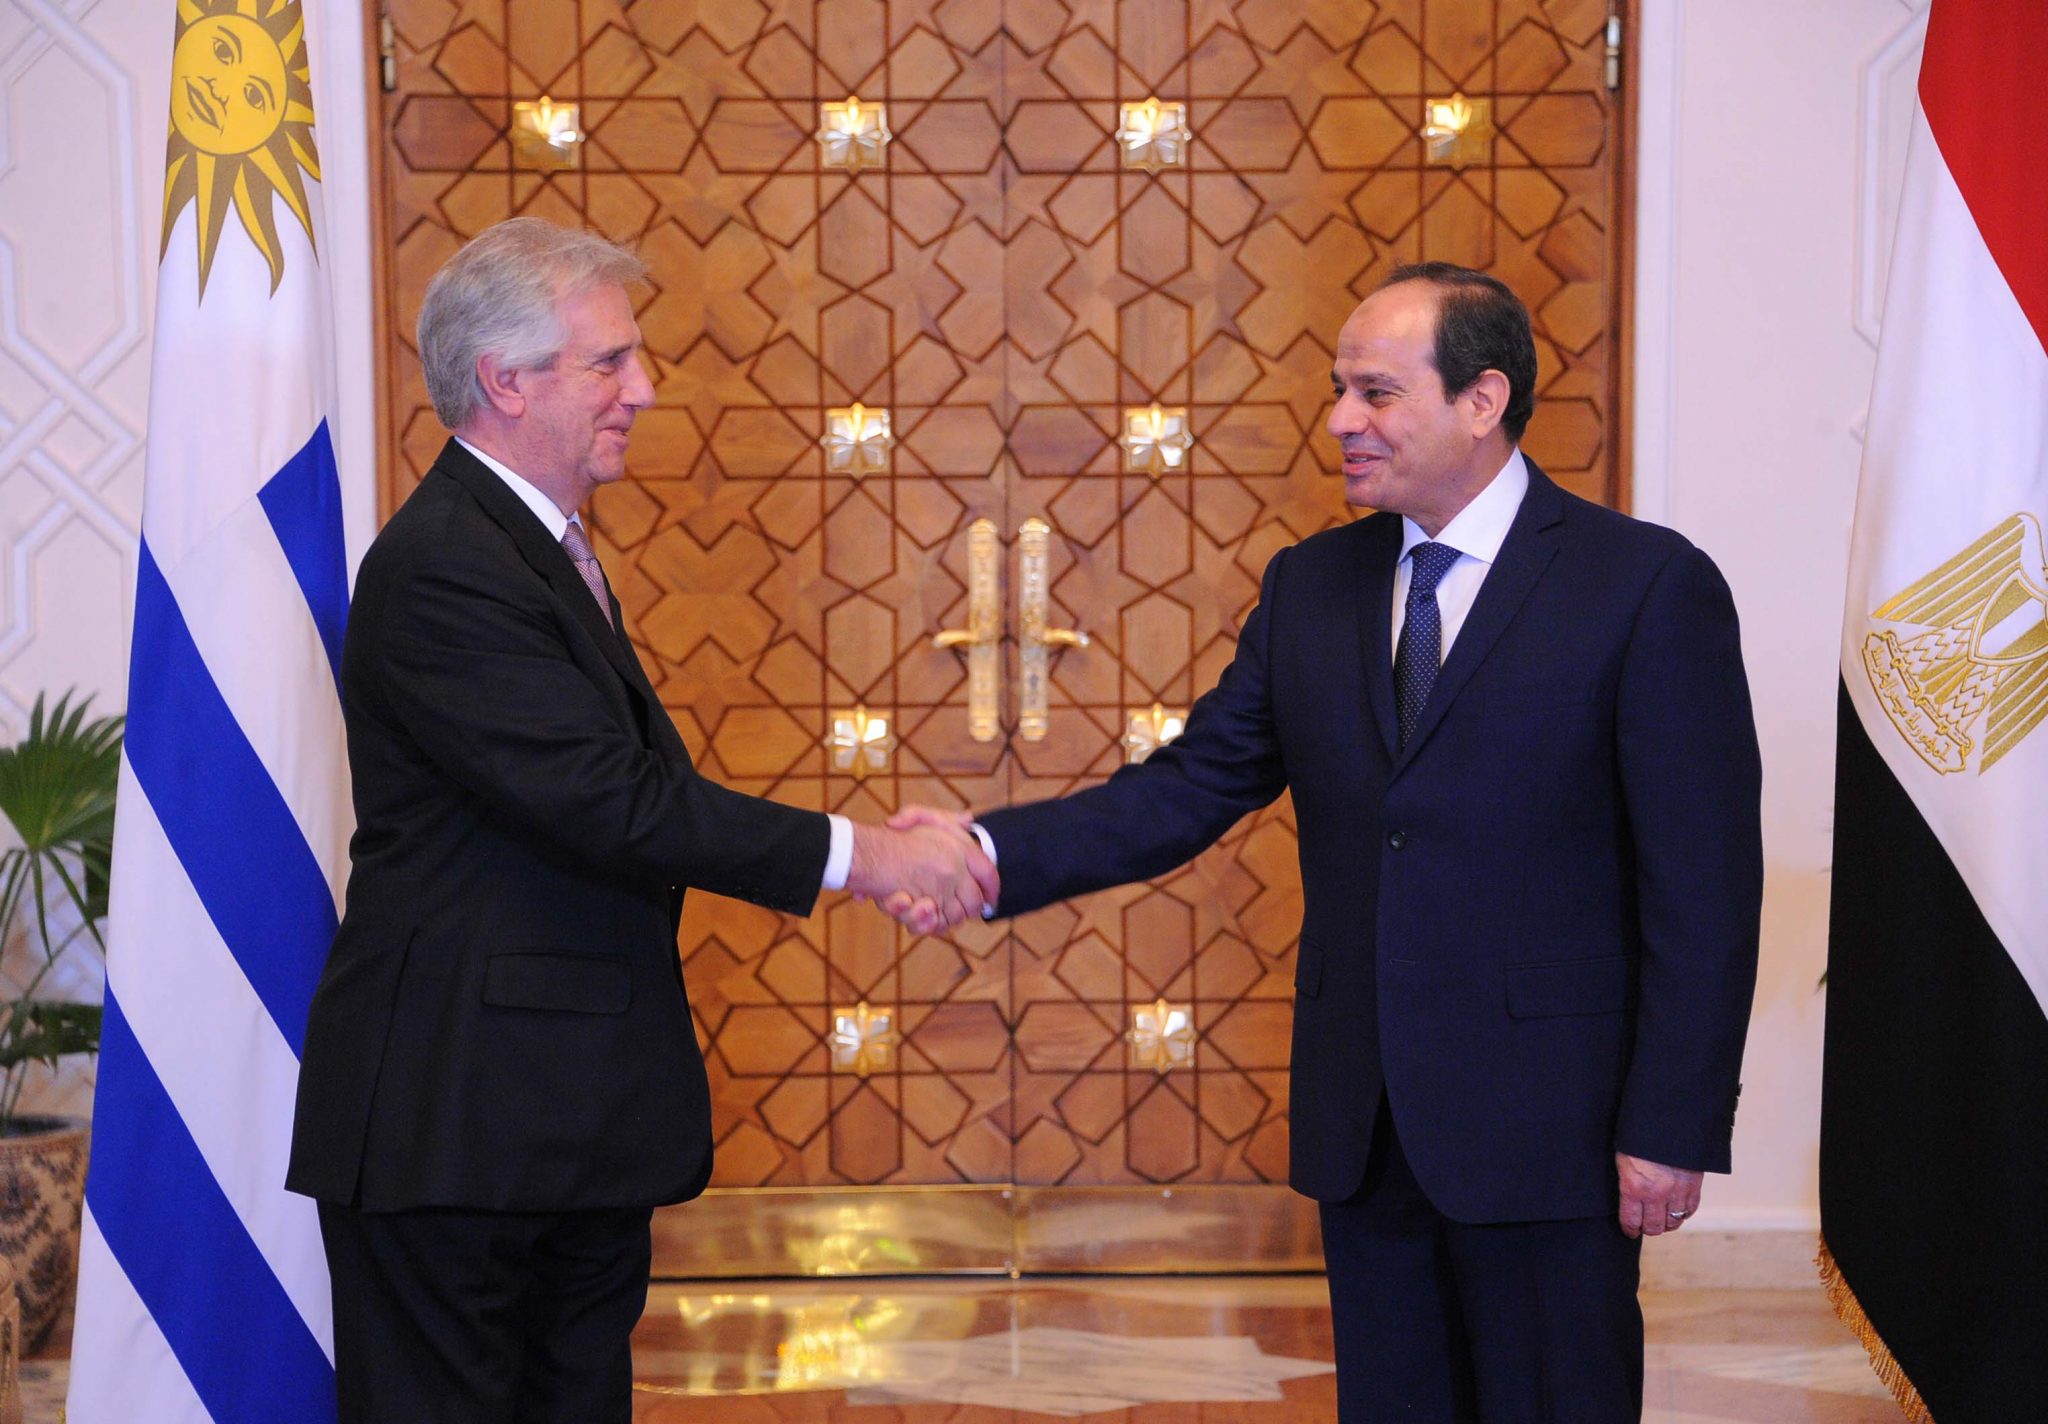   رئيس الأوروجواي يؤكد دعم جهود القاهرة لمحاربة الإرهاب